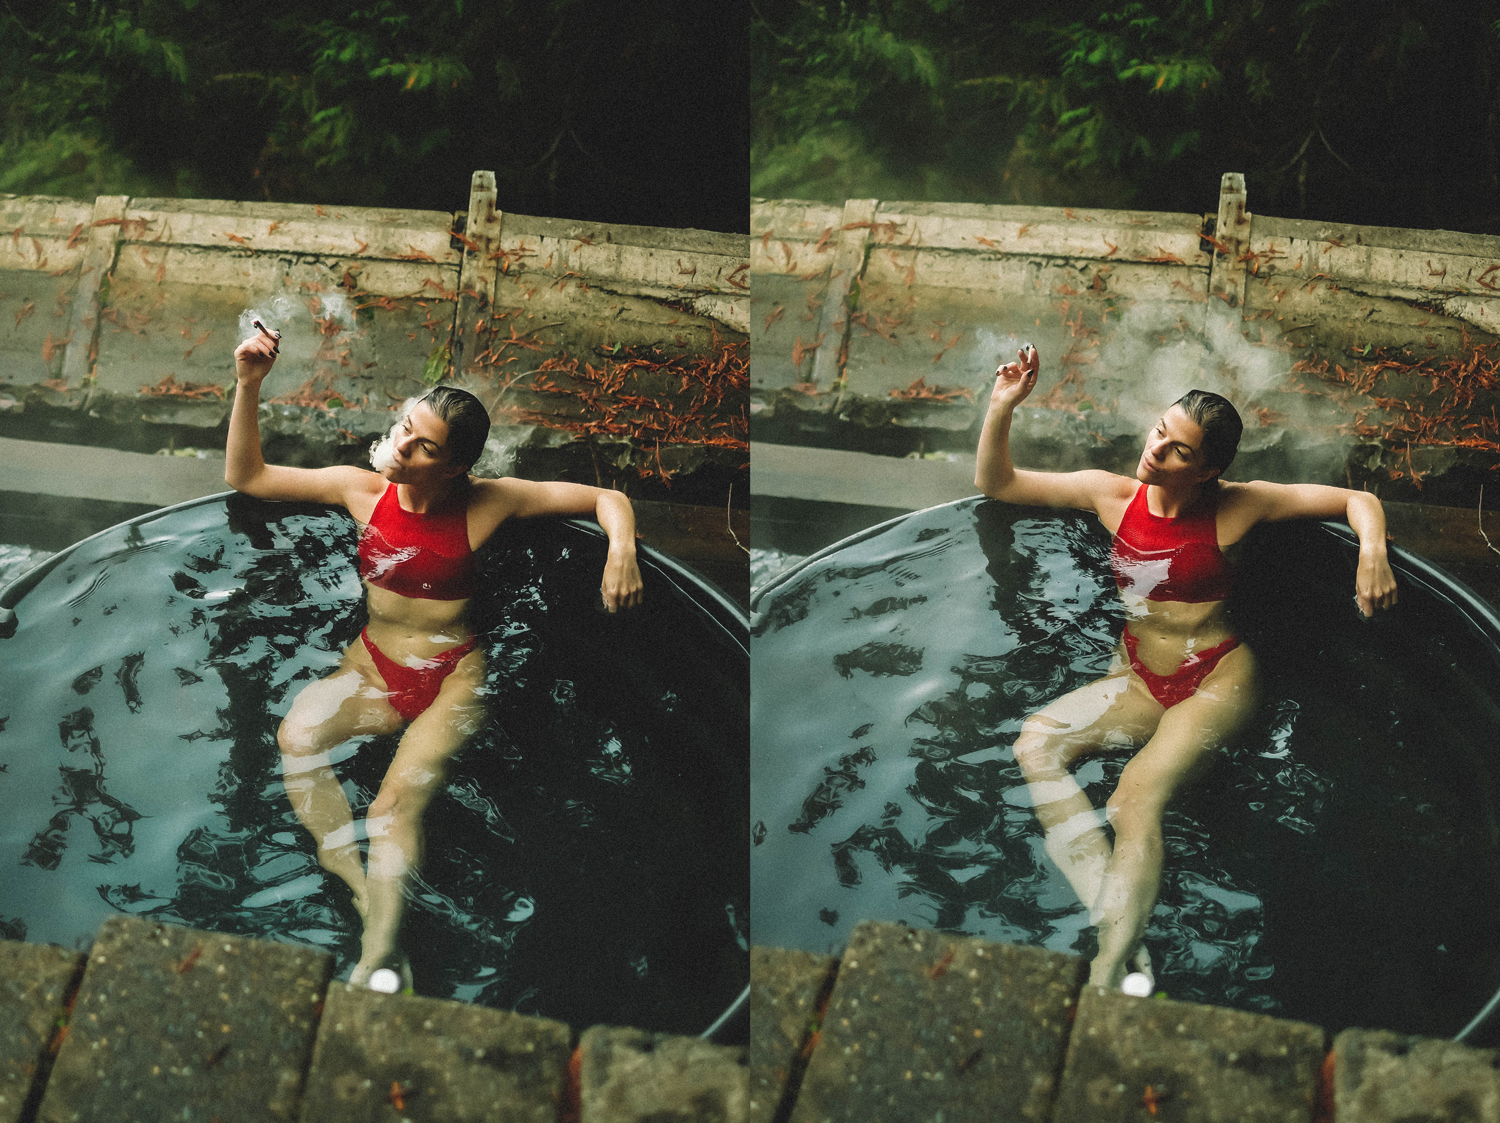 Weed in hot springs